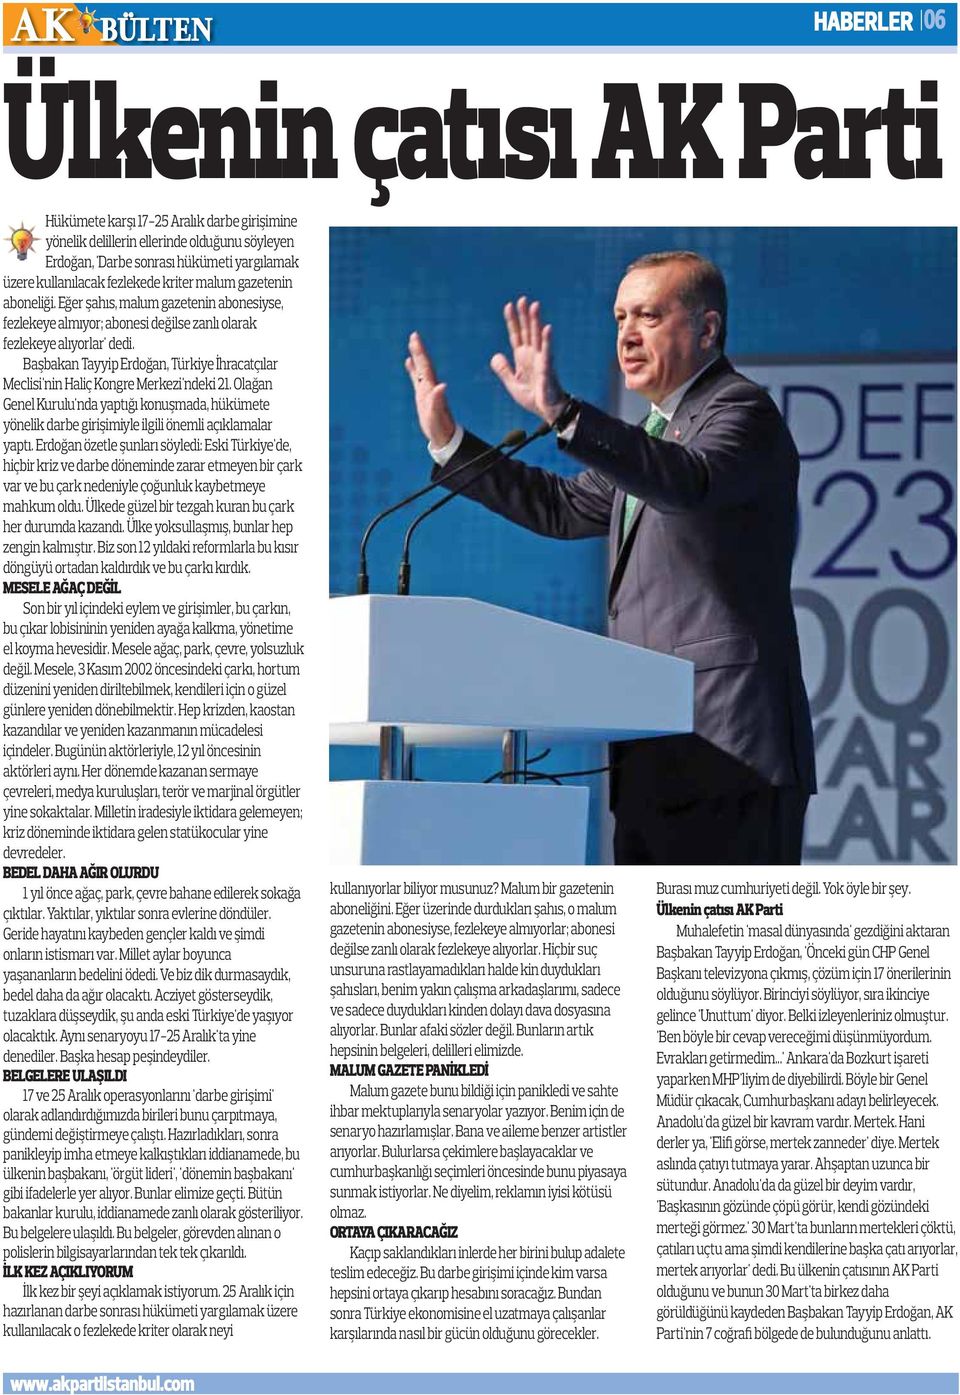 Başbakan Tayyip Erdoğan, Türkiye İhracatçılar Meclisi'nin Haliç Kongre Merkezi'ndeki 21. Olağan Genel Kurulu'nda yaptığı konuşmada, hükümete yönelik darbe girişimiyle ilgili önemli açıklamalar yaptı.